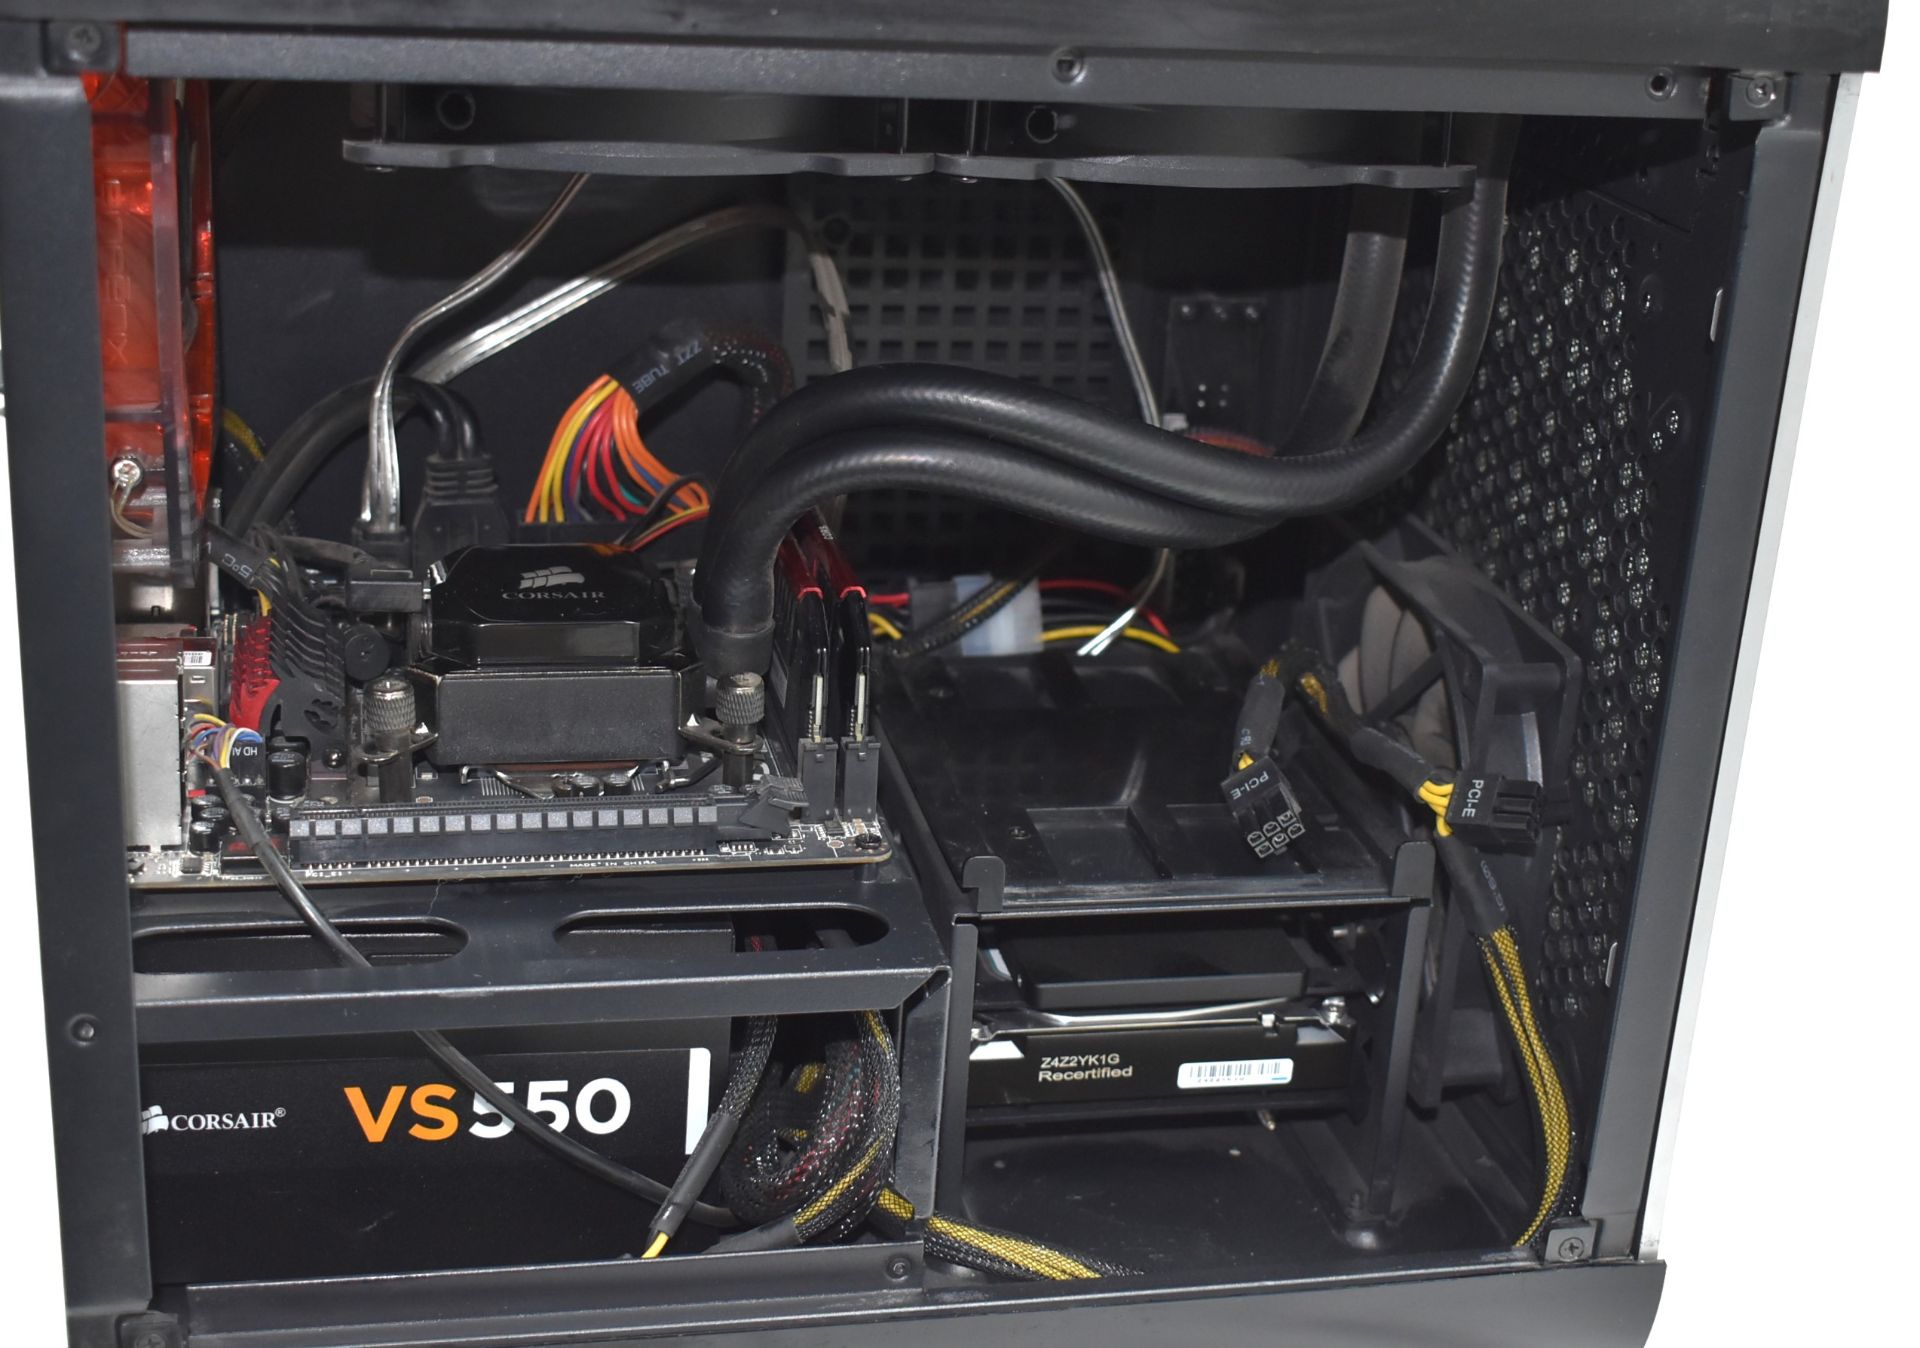 1 x Mini ITX Desktop PC Featuring an Intel i5-4570 Processor, 16GB Ram, 500GB SSD & 2TB Hard Drive - Image 4 of 5